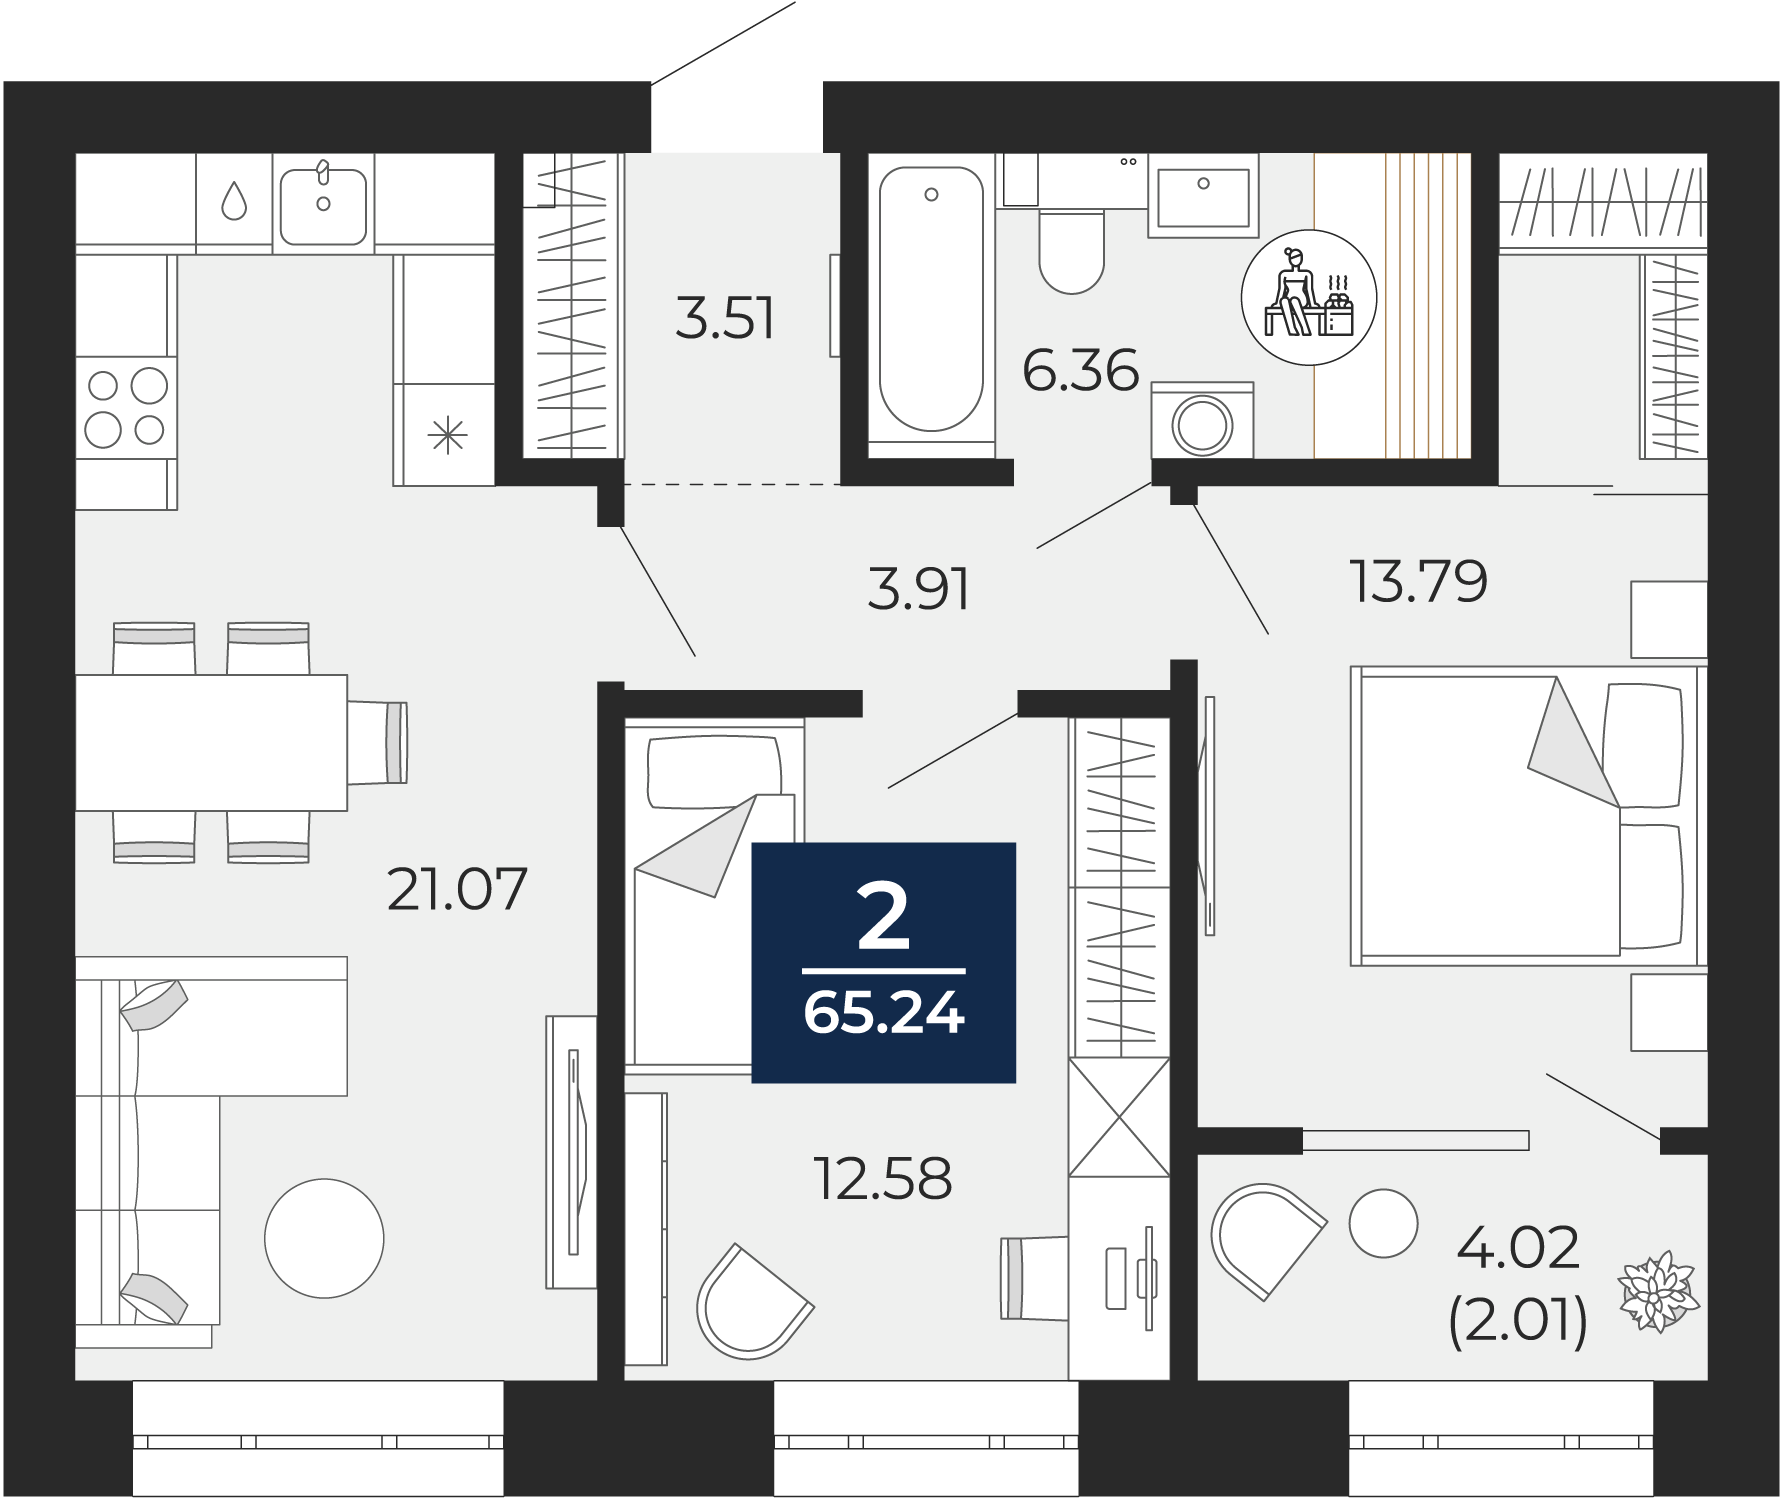 Квартира № 154, 2-комнатная, 65.24 кв. м, 6 этаж